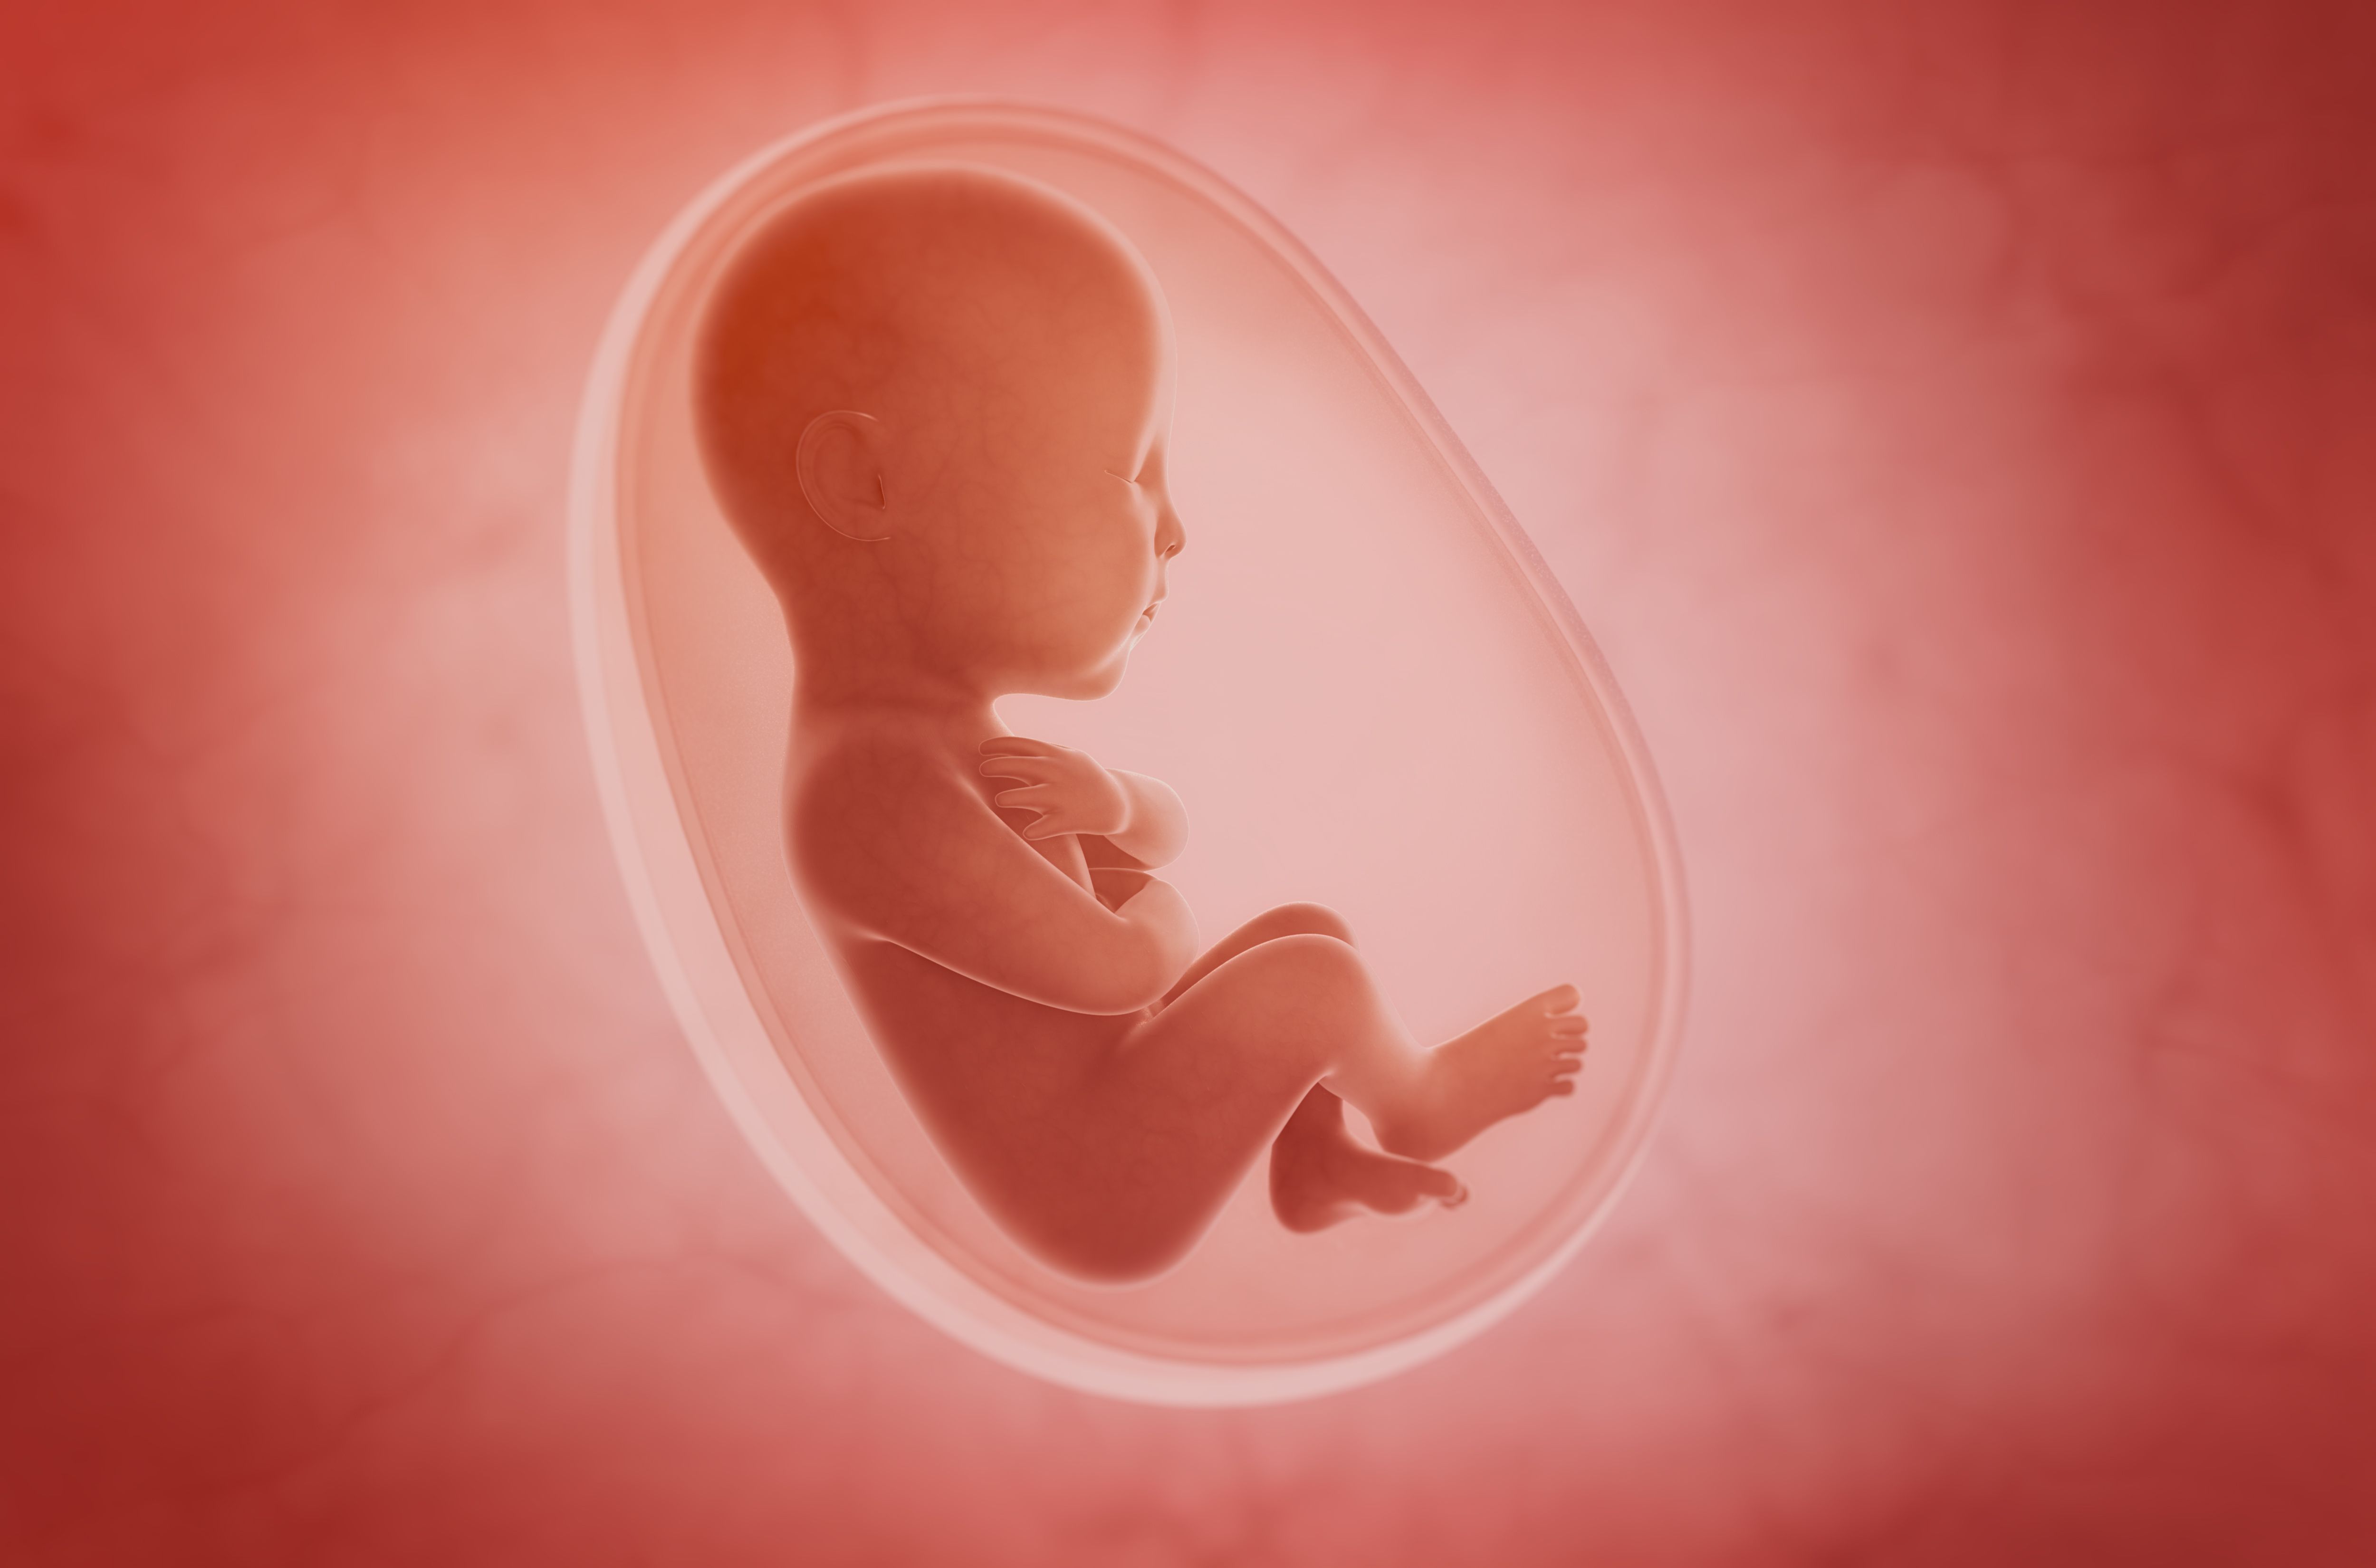 Внутриутробная жизнь ребенка. Младенец в утробе. УТ детям.